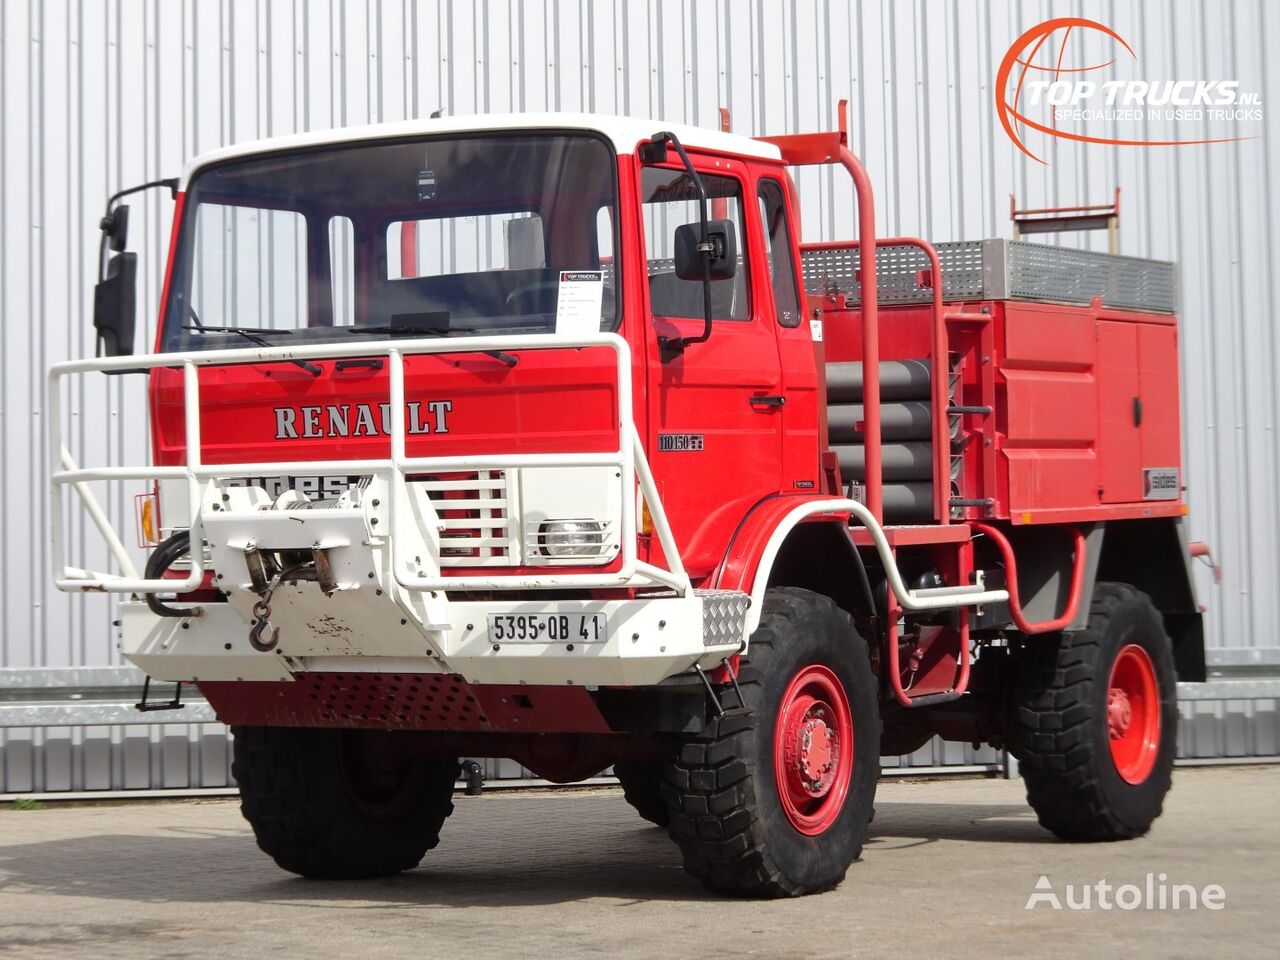 gaisrinė mašina Renault 110-150 4x4 -Feuerwehr, Fire brigade -3.000 ltr watertank - 5t